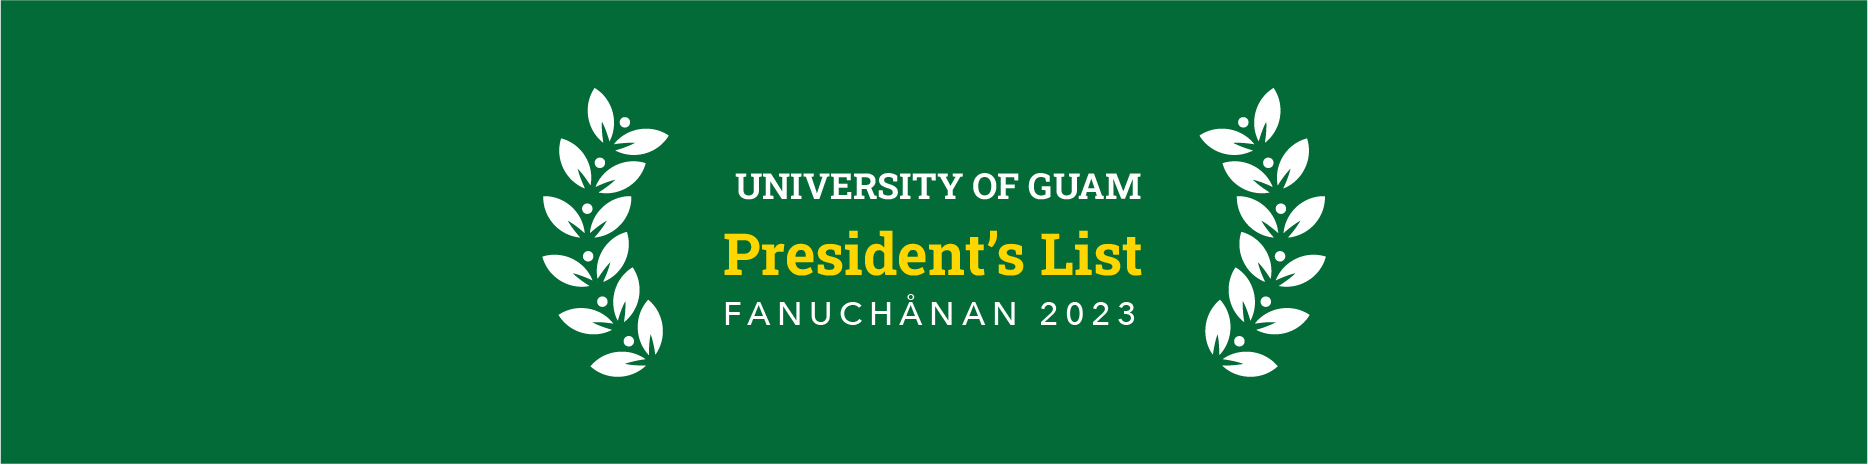 President's list banner